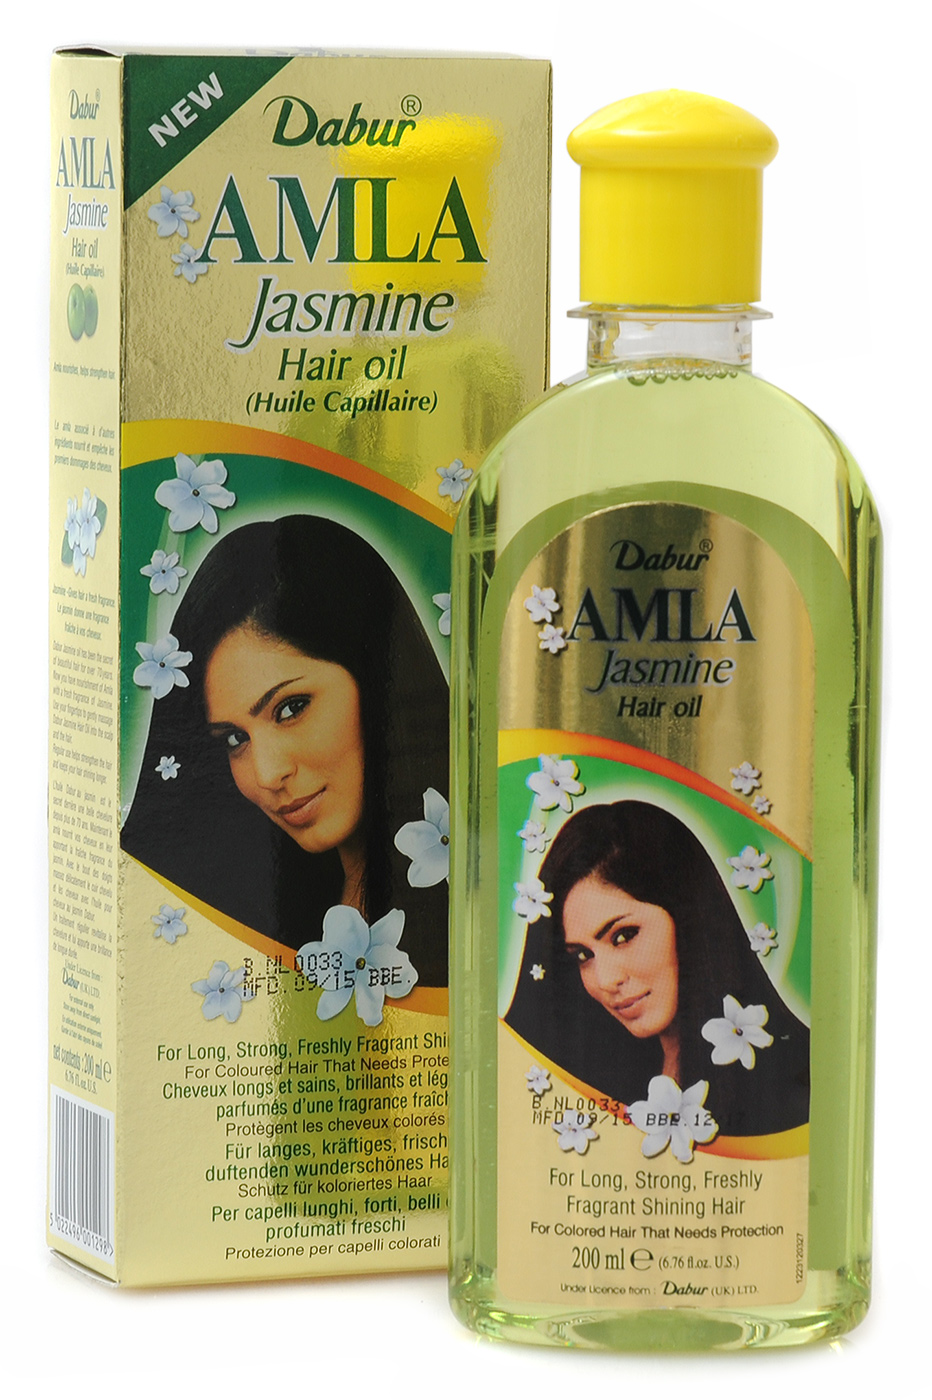 Dabur Amla Jasmine Hair Oil huile capillaire 200ml